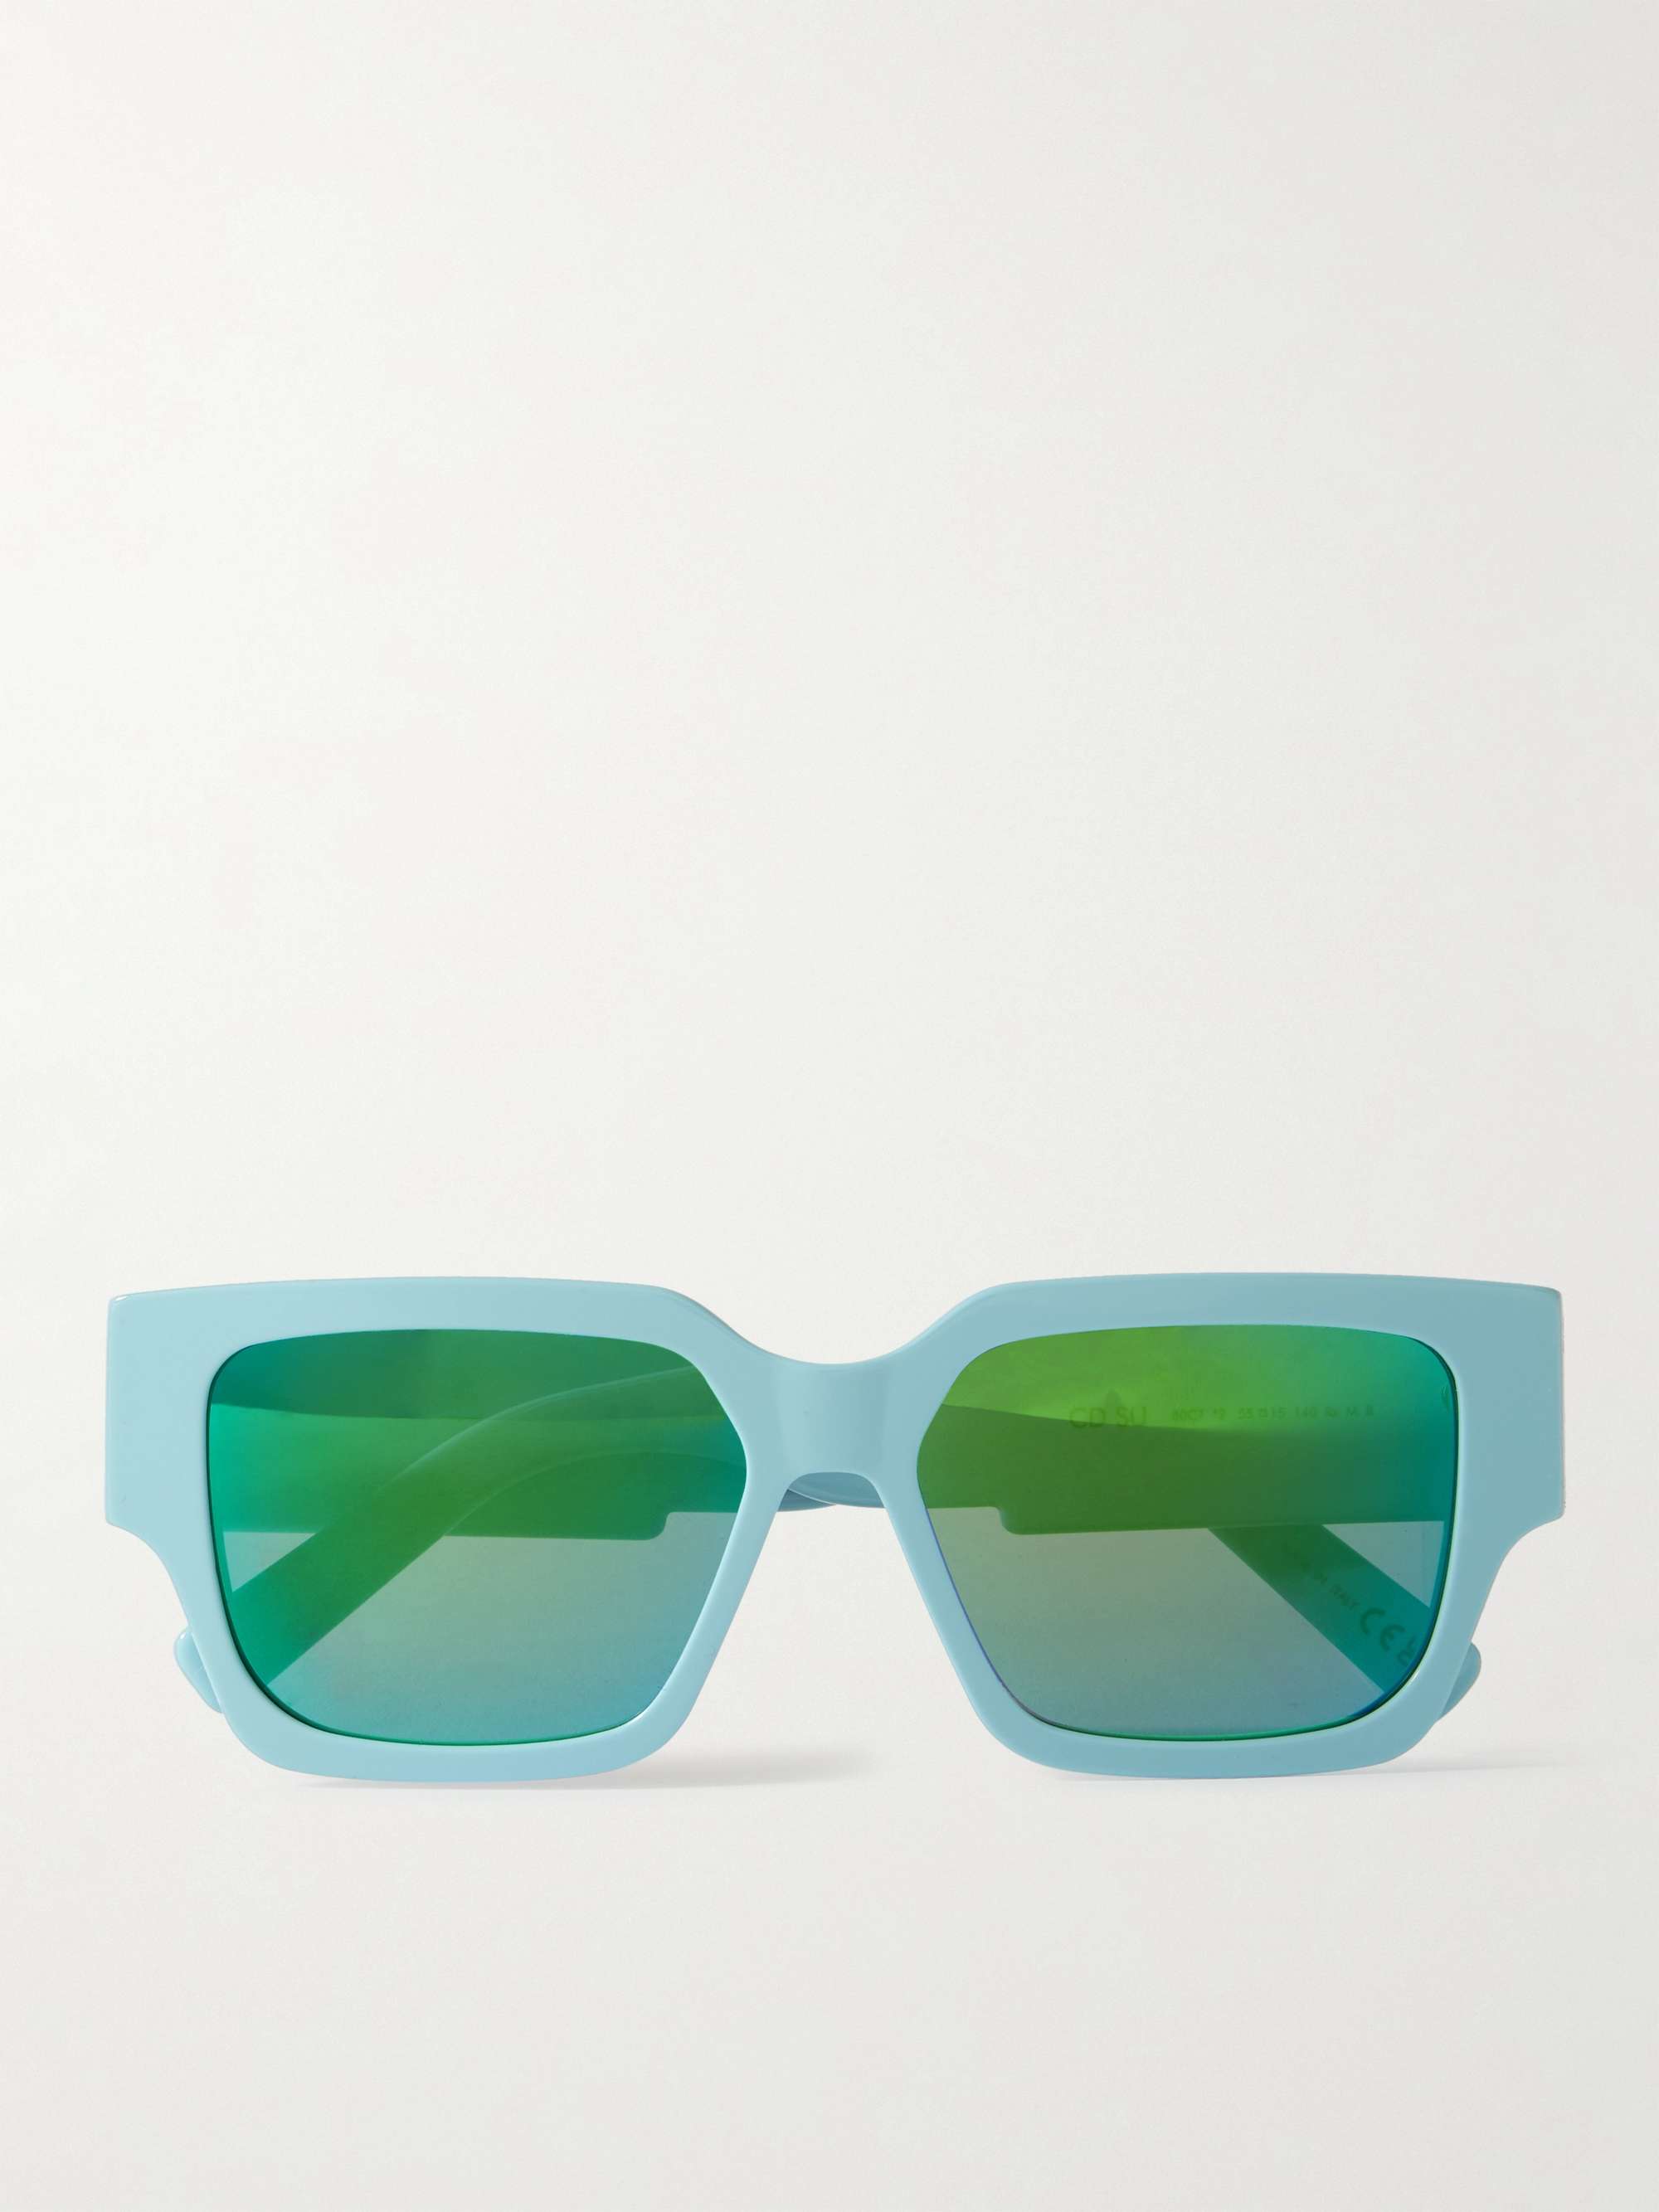 Dior Eyewear Sunglasses for Men  Shop Now on FARFETCH